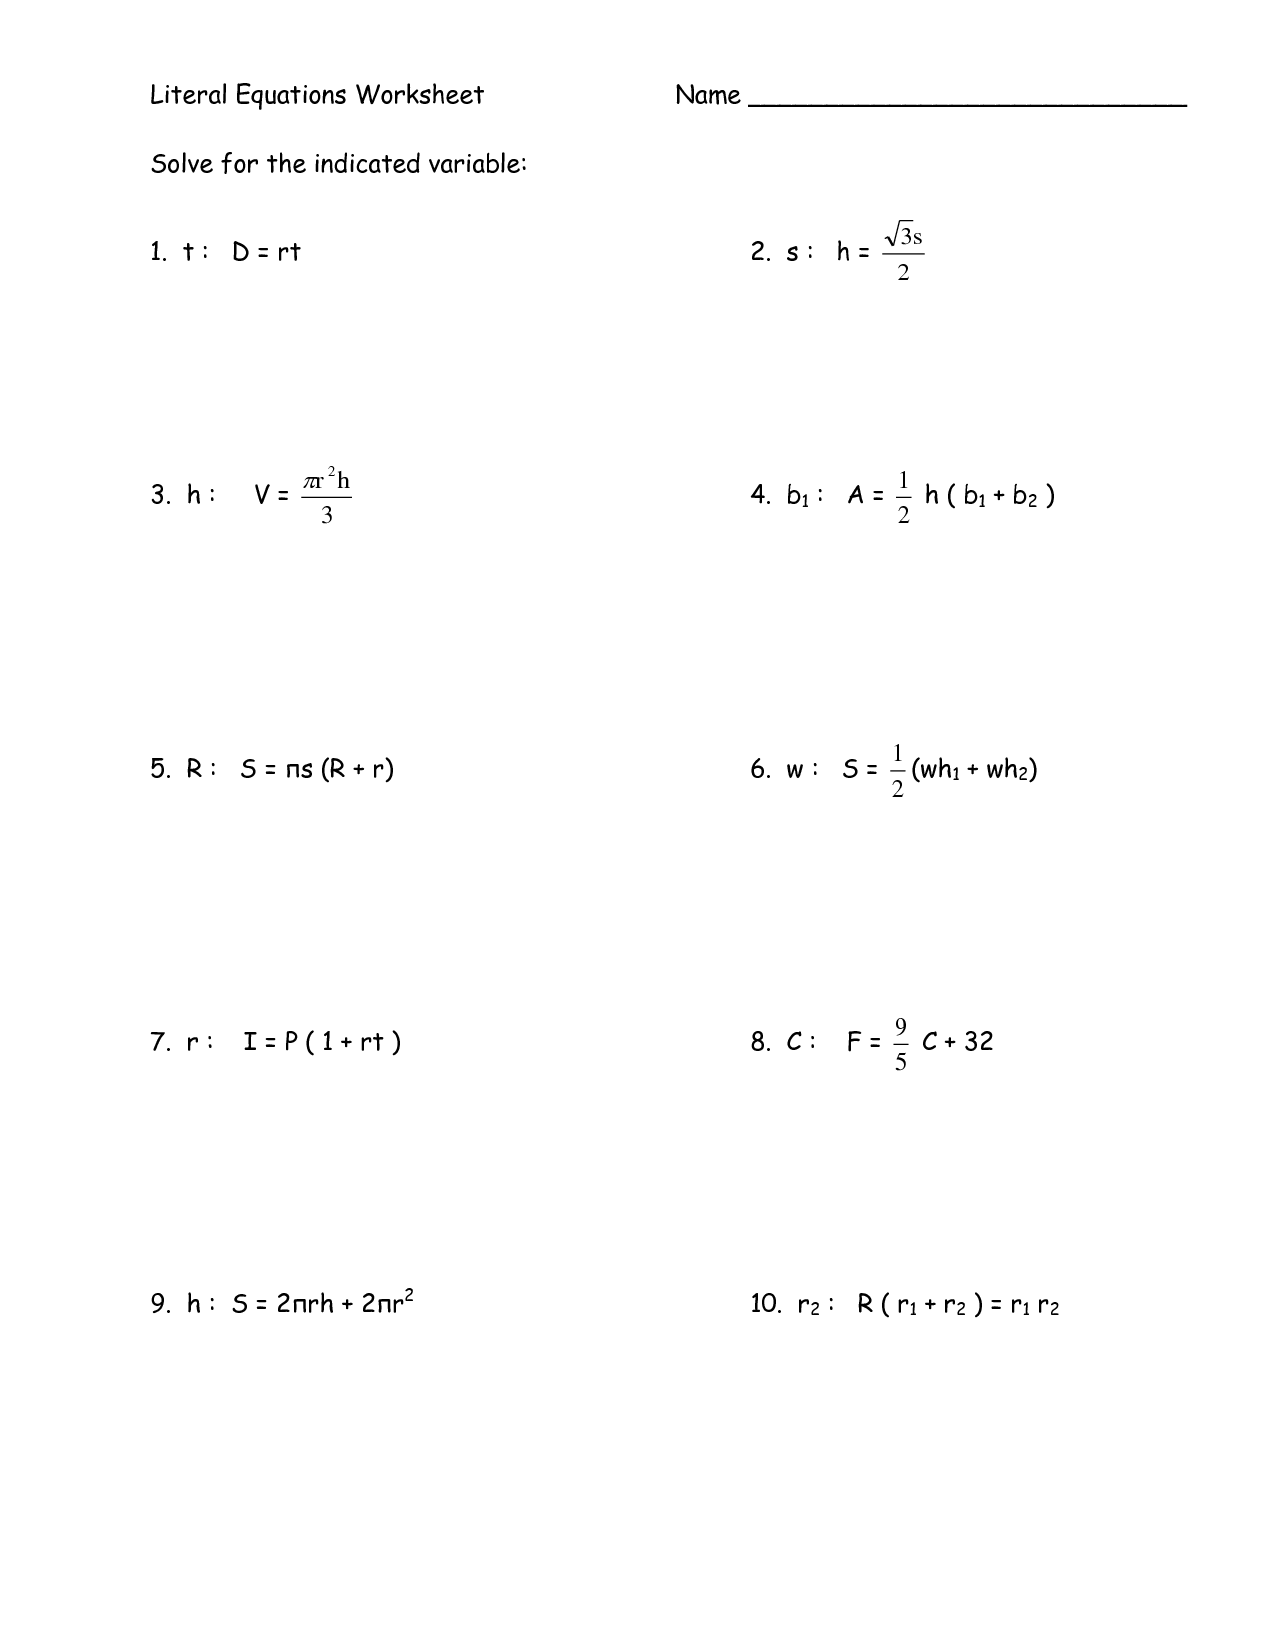 Solving Literal Equations Worksheet Image